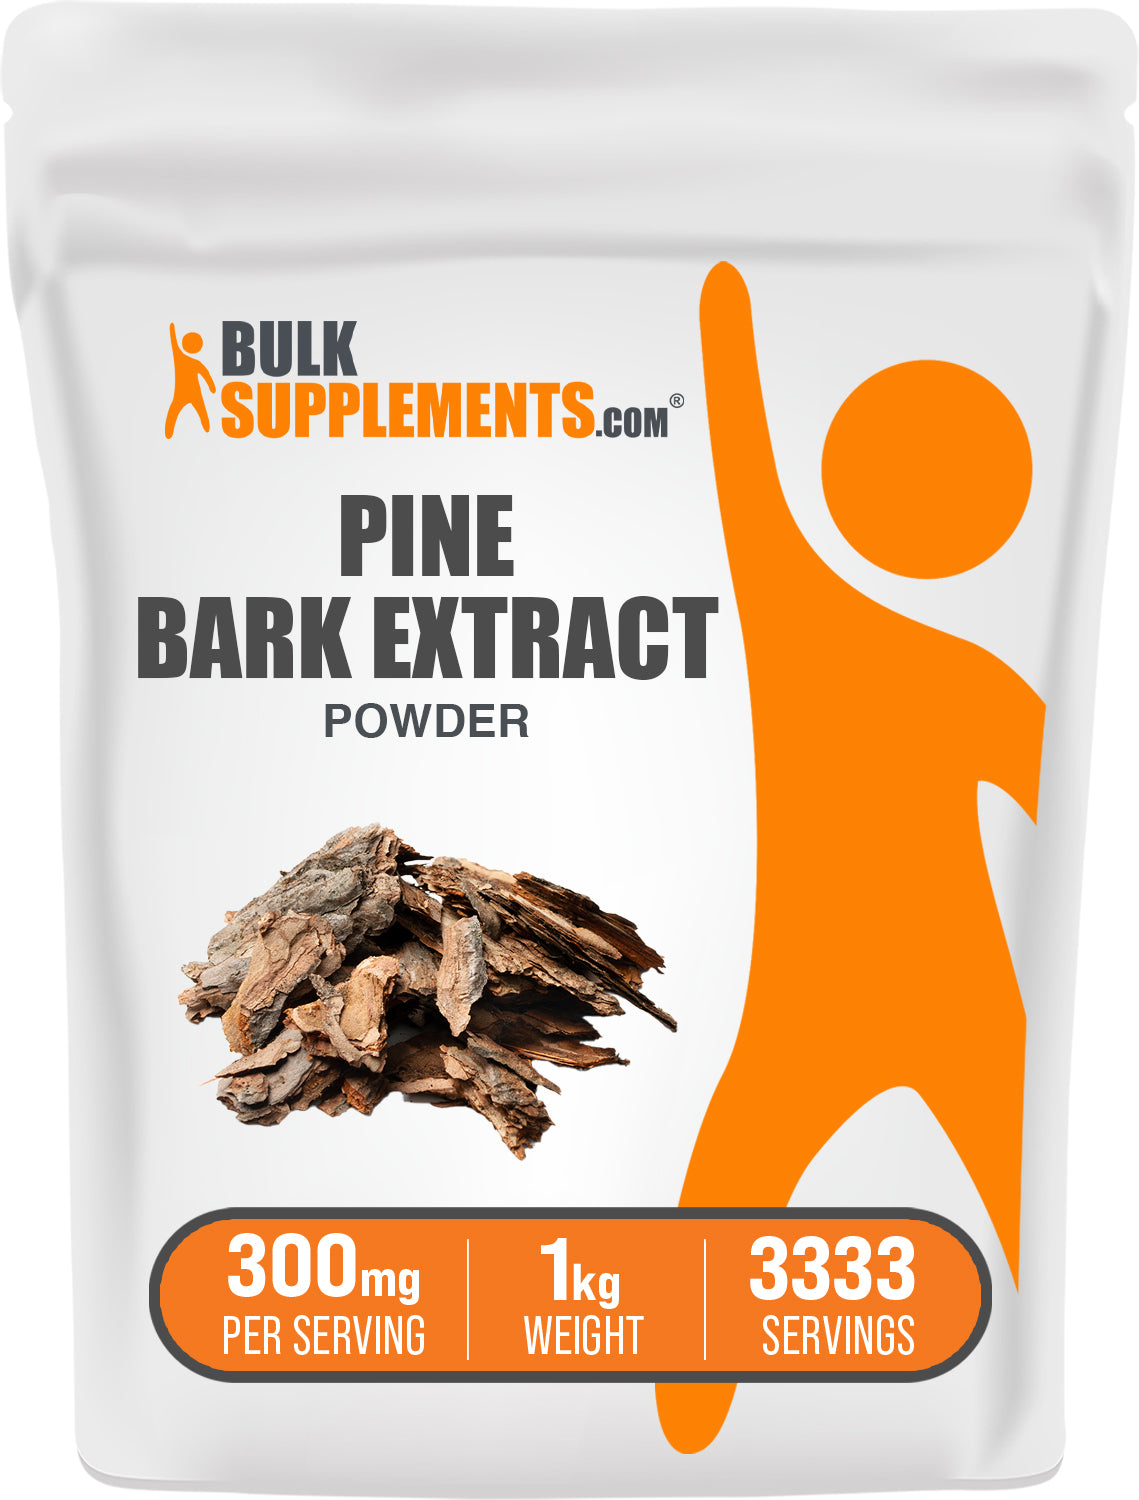 Pine Bark Extract 1kg Bag